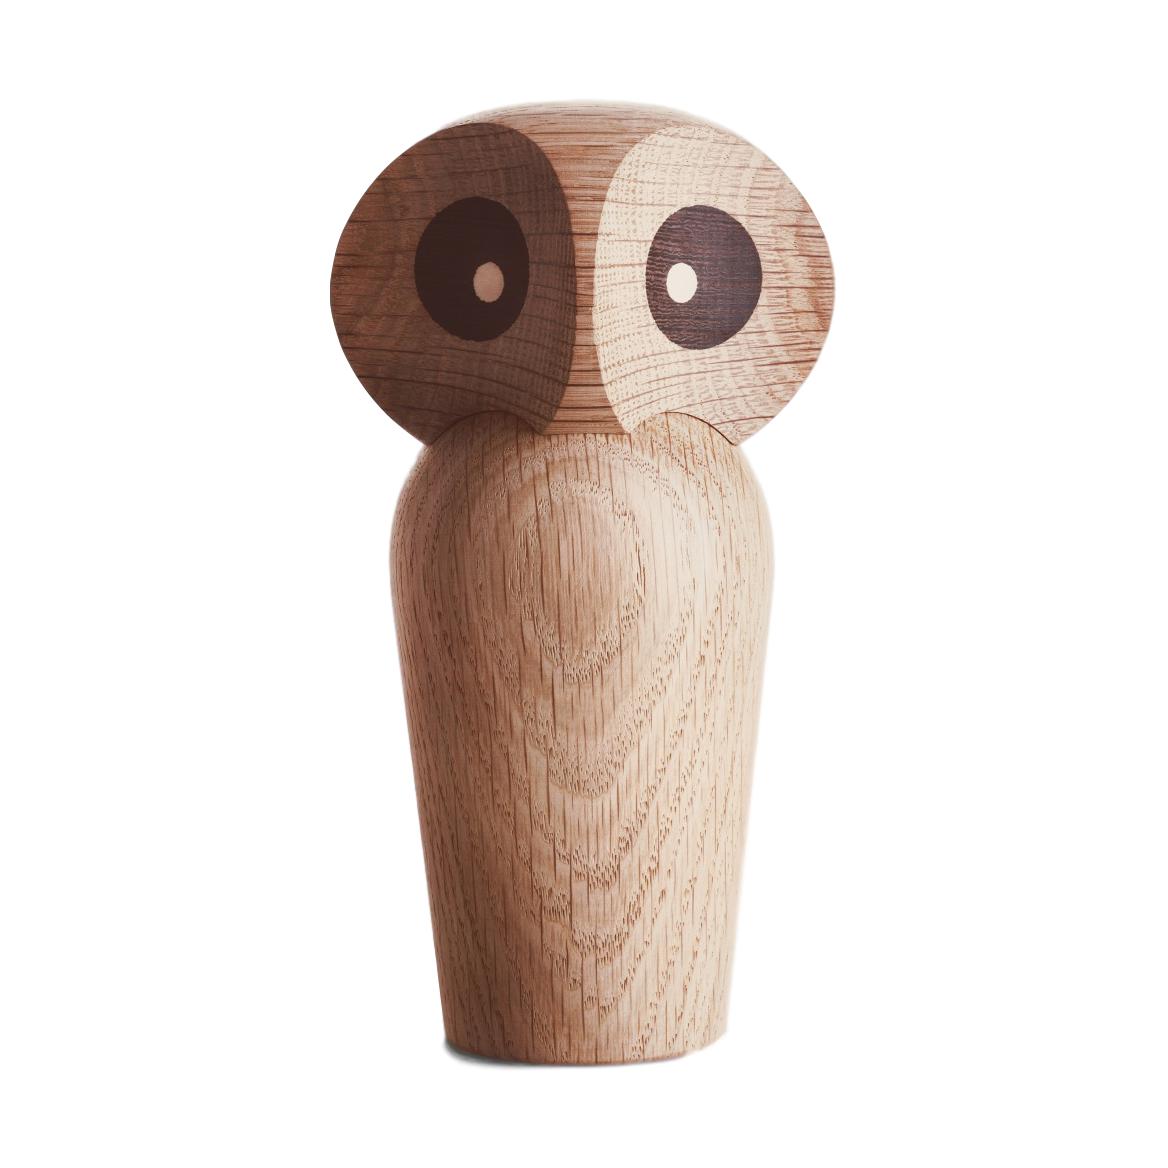 Architectmade Paul Anker Hansen Owl 85 cm, roble